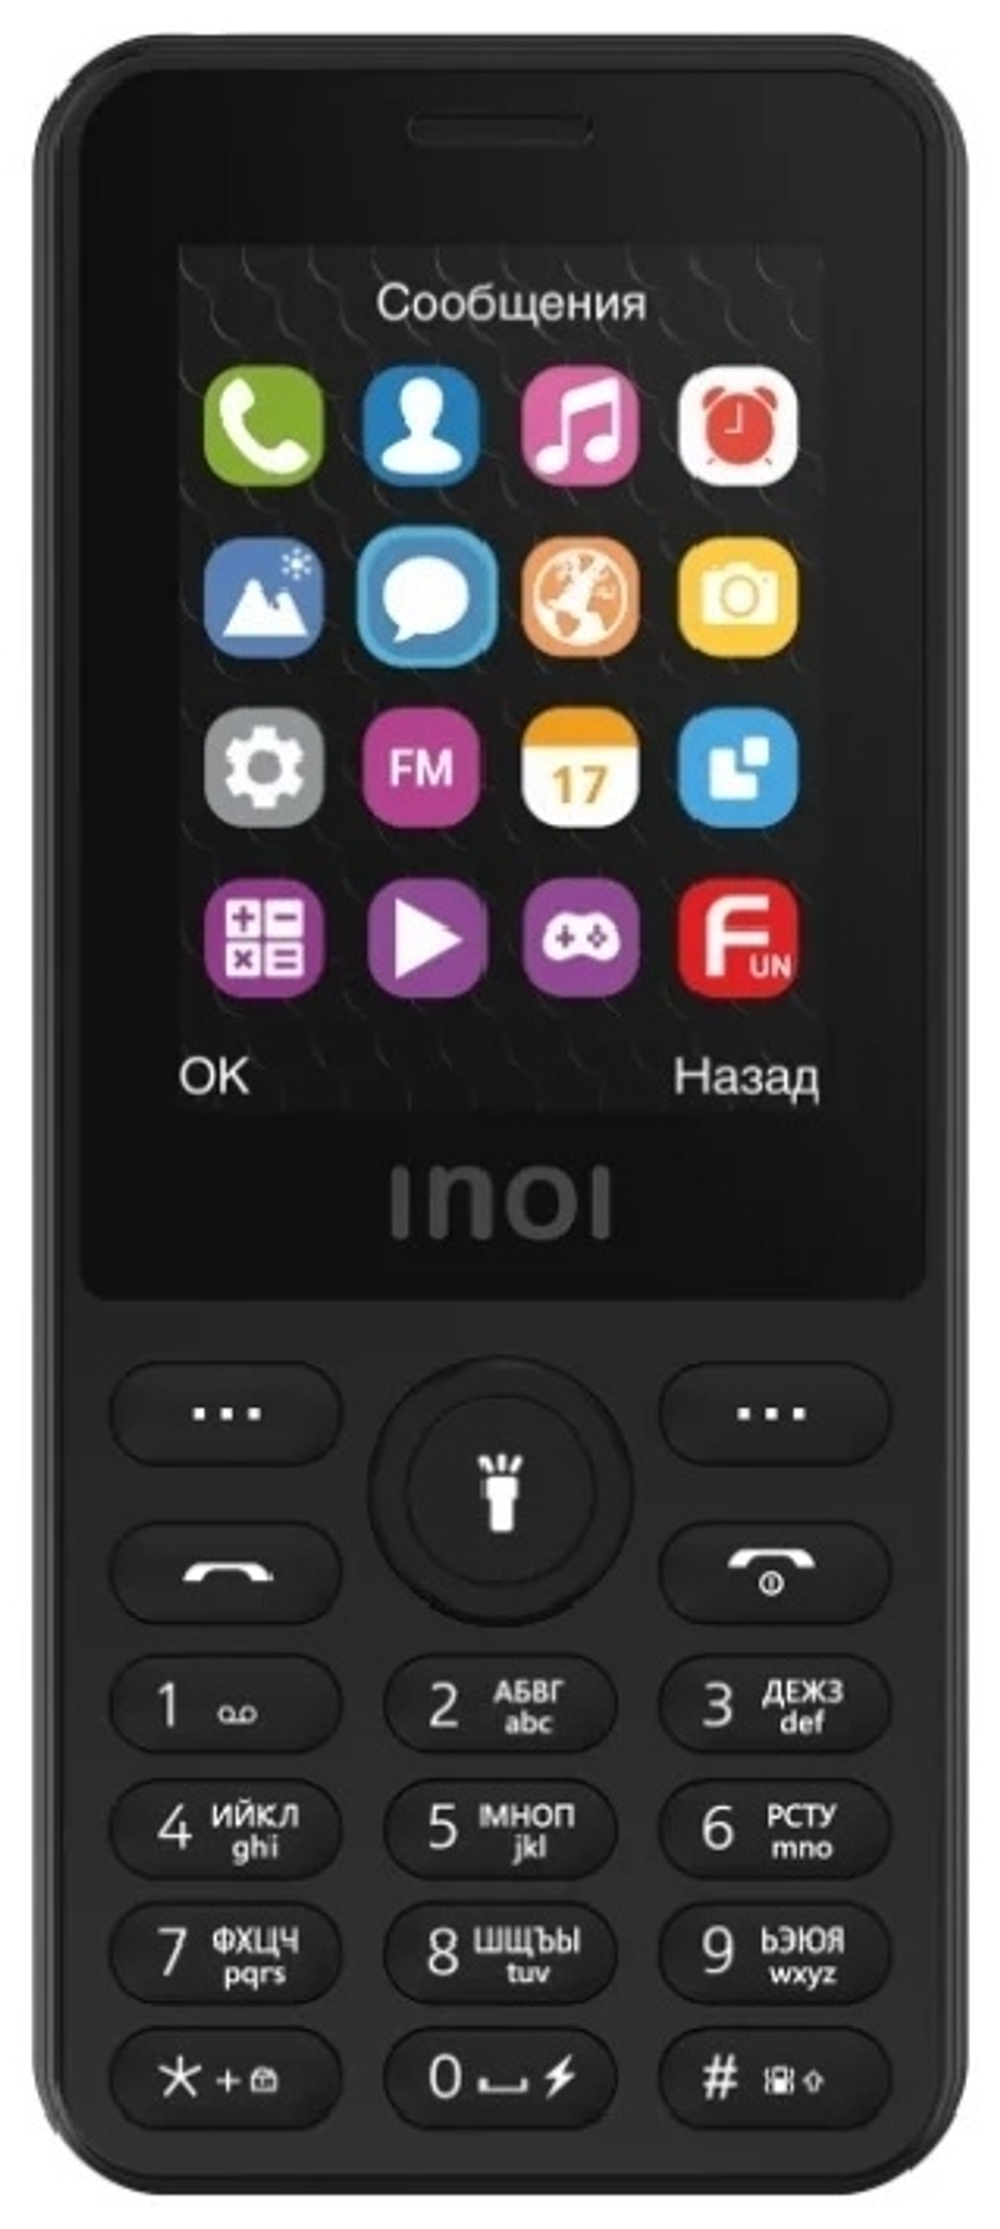 Мобильный телефон INOI 249 черный